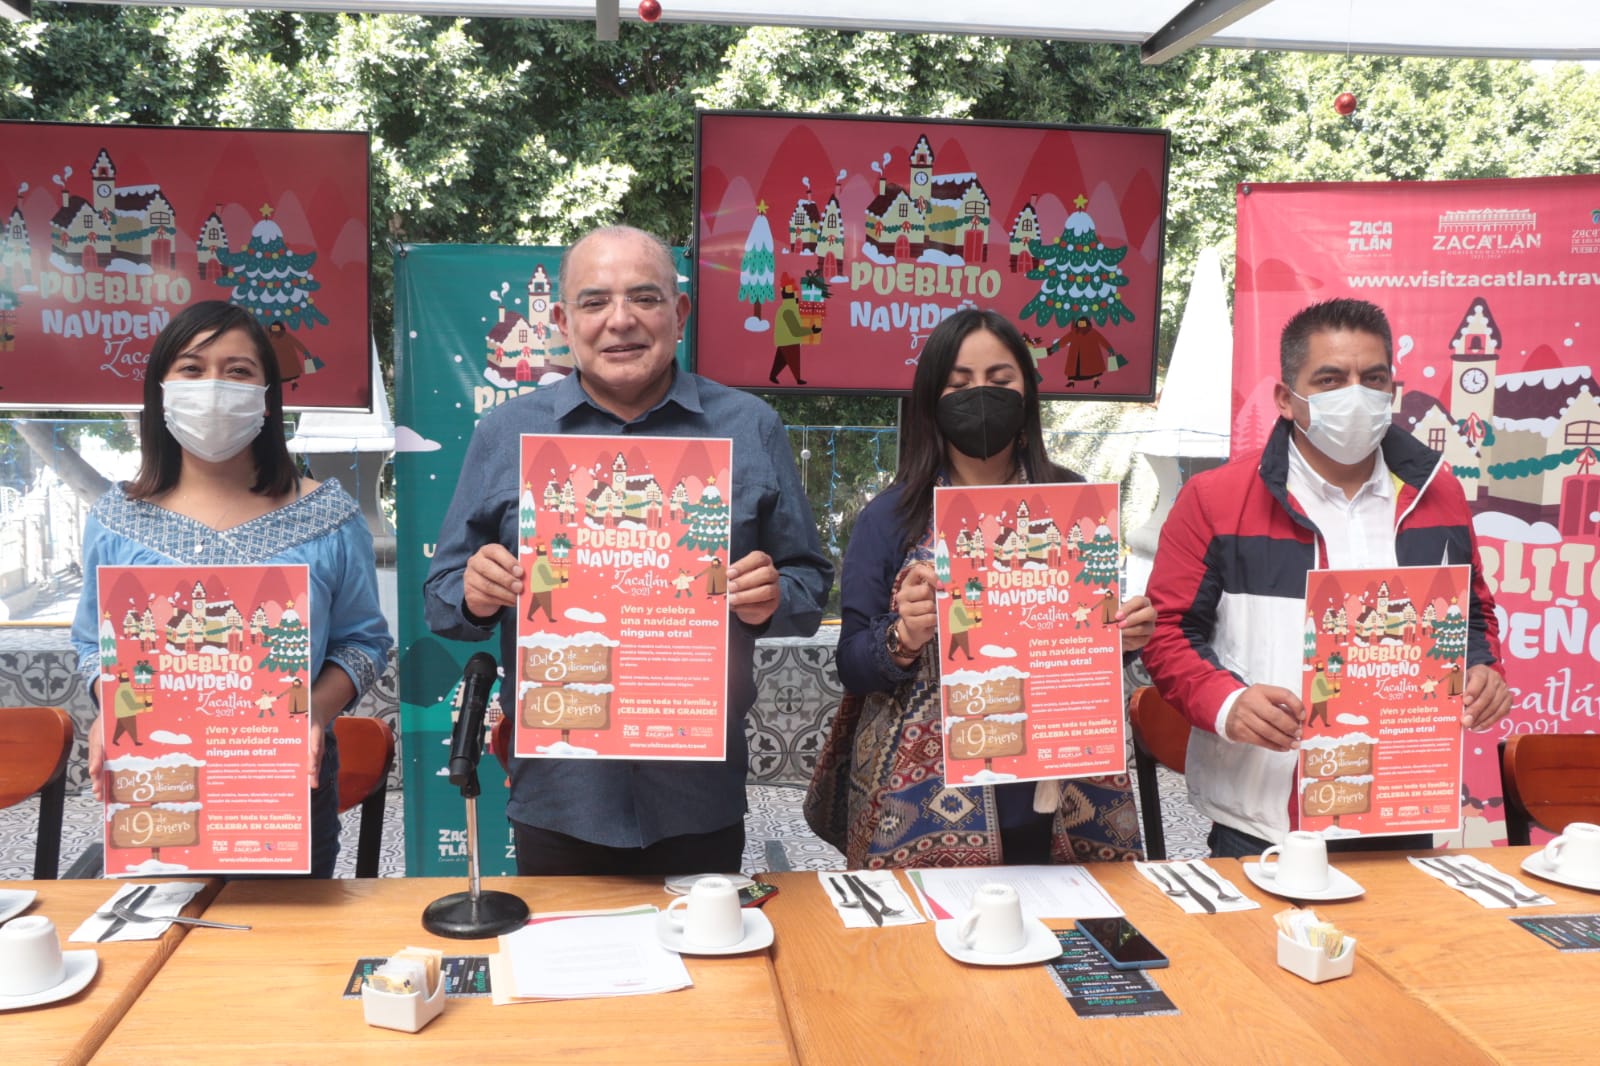 Zacatlán presenta Mi pueblito navideño para atraer más turismo